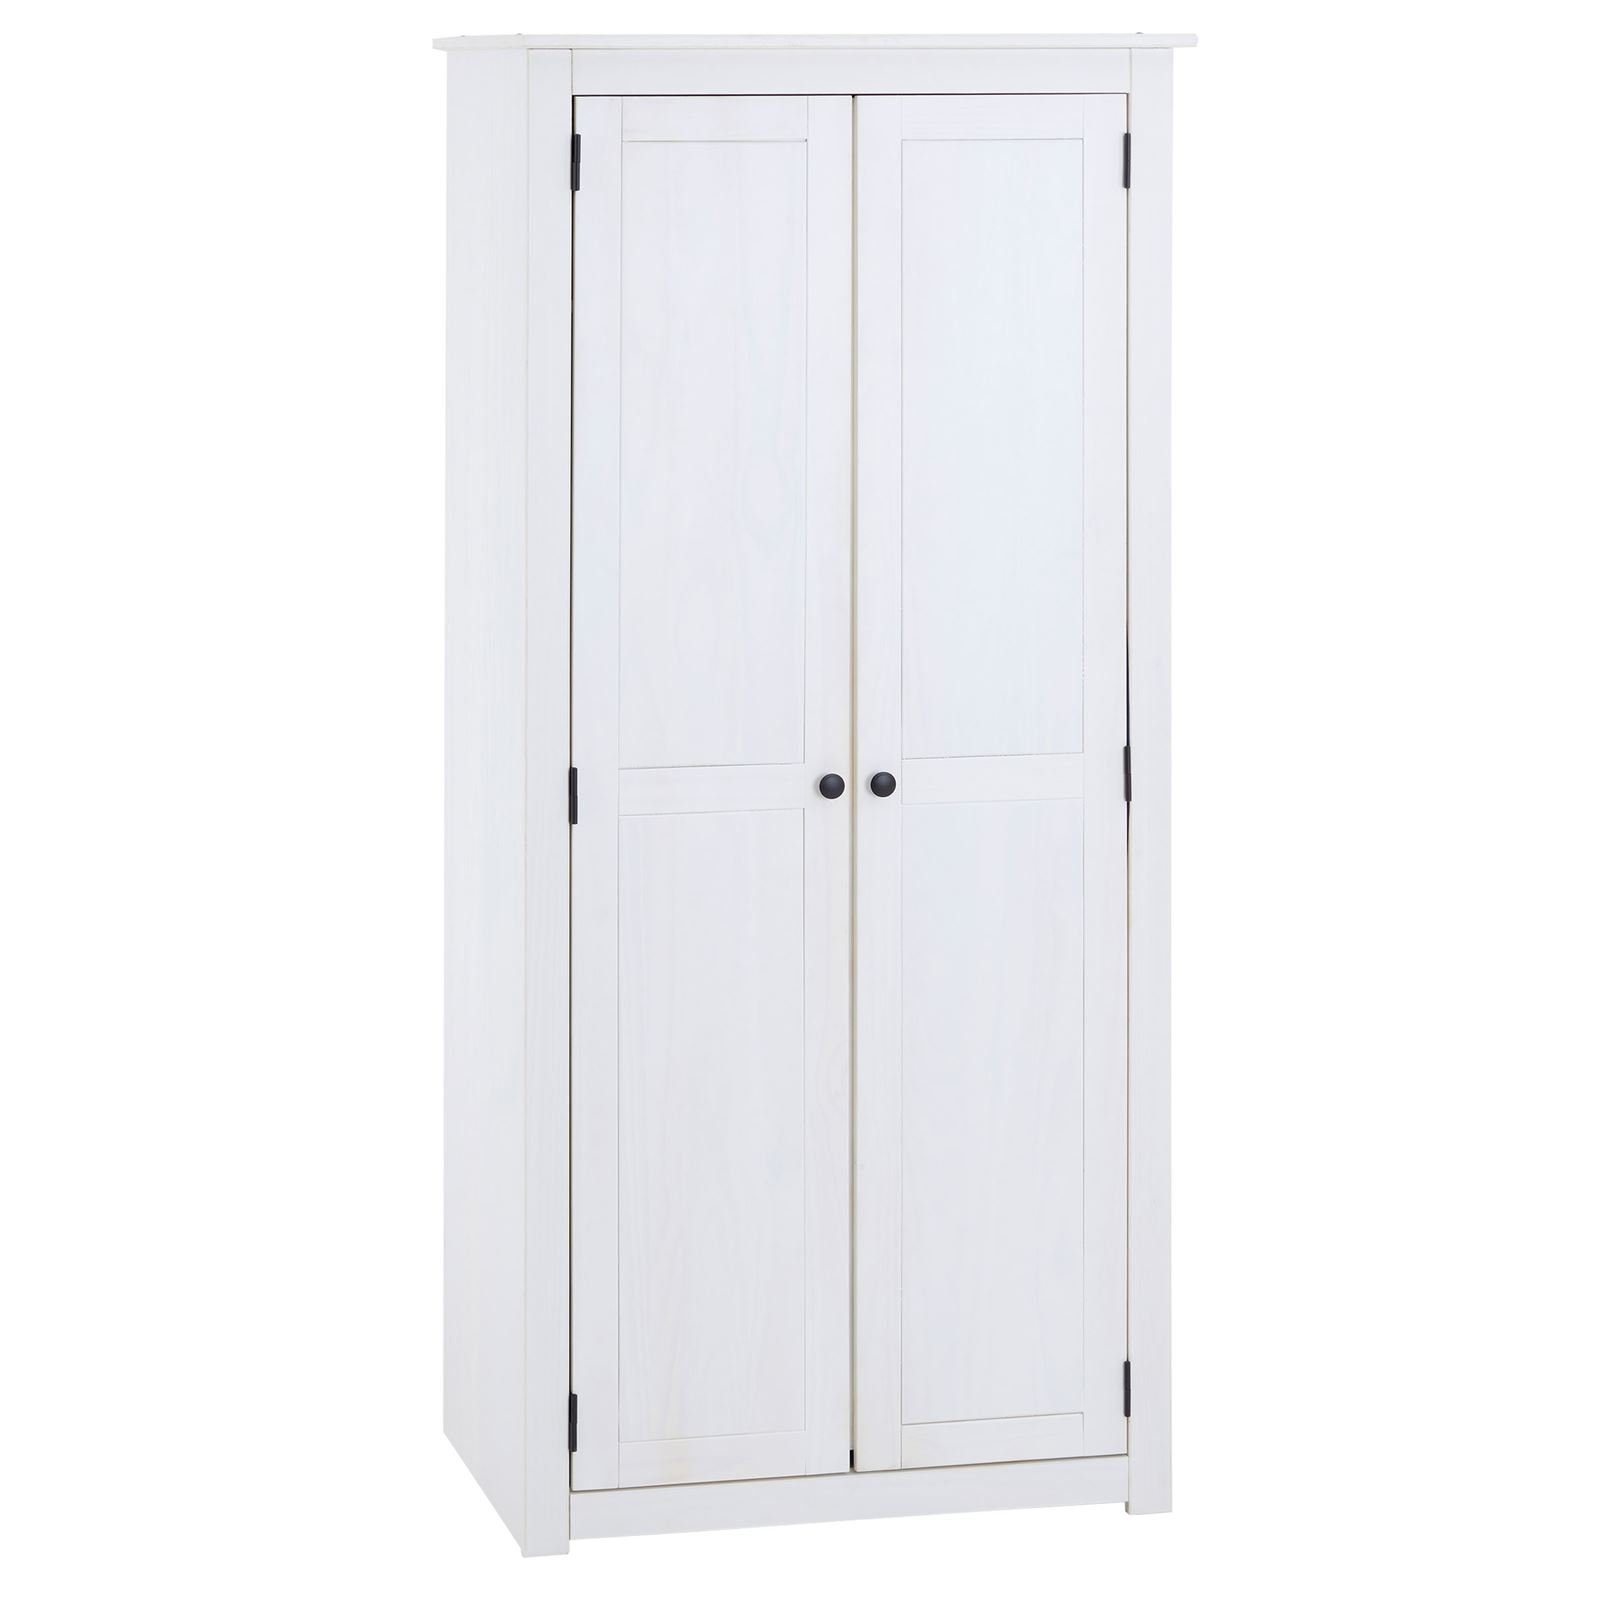 CARO-Möbel Kleiderschrank PAULO Kleiderschrank mit 2 Türen aus Kiefer Schrank mit großem Fach und Klei